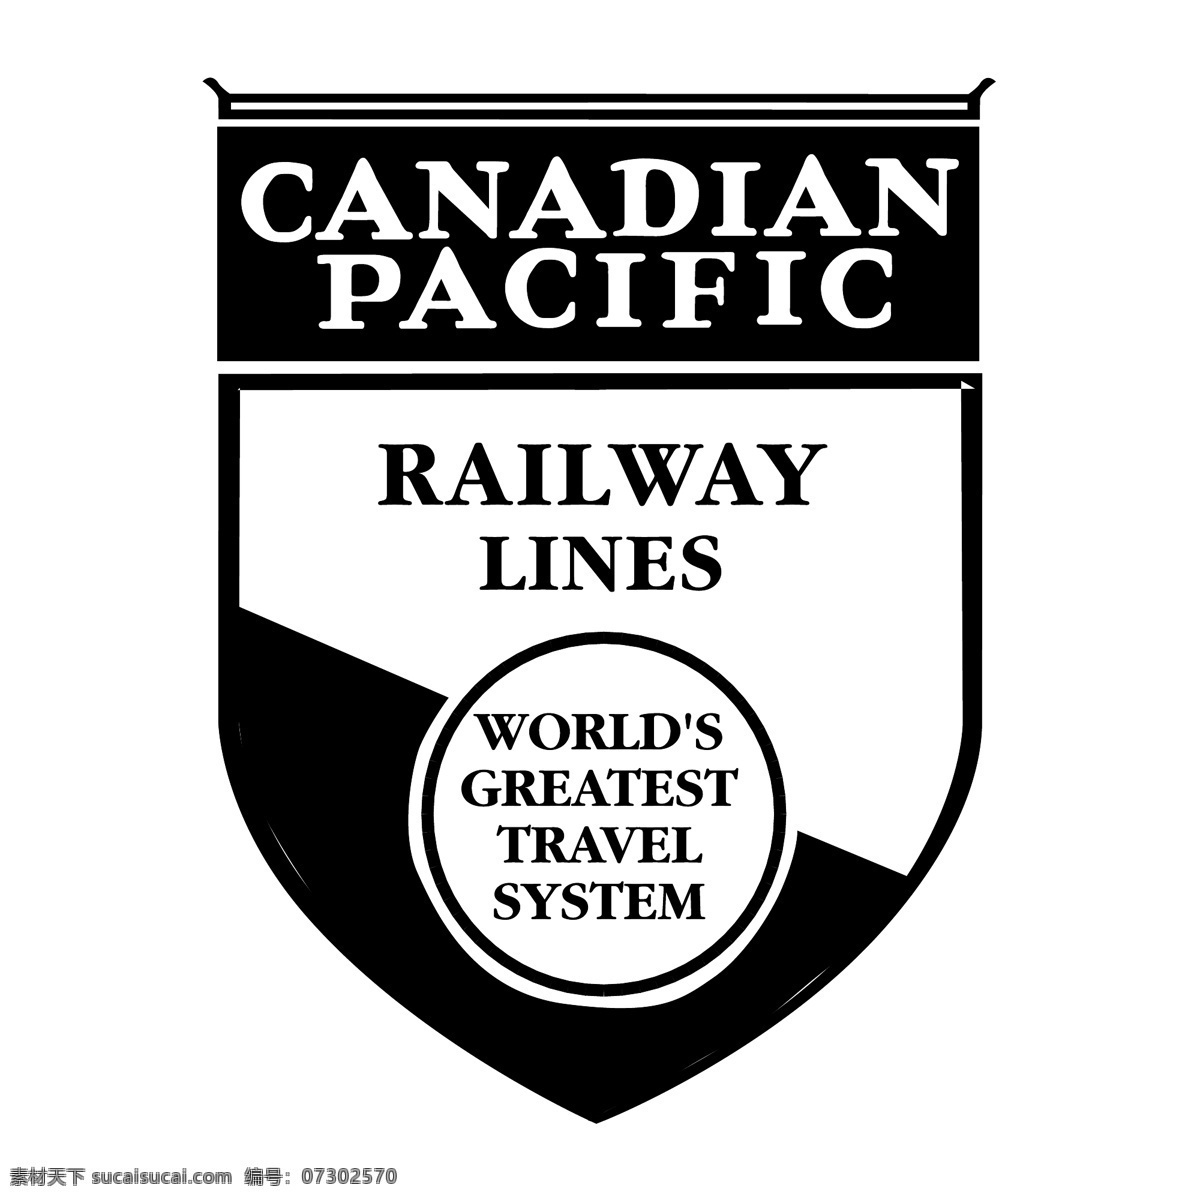 加拿大 太平洋铁路 加拿大太平洋 太平洋 铁路 向量 矢量 国家 蓝色